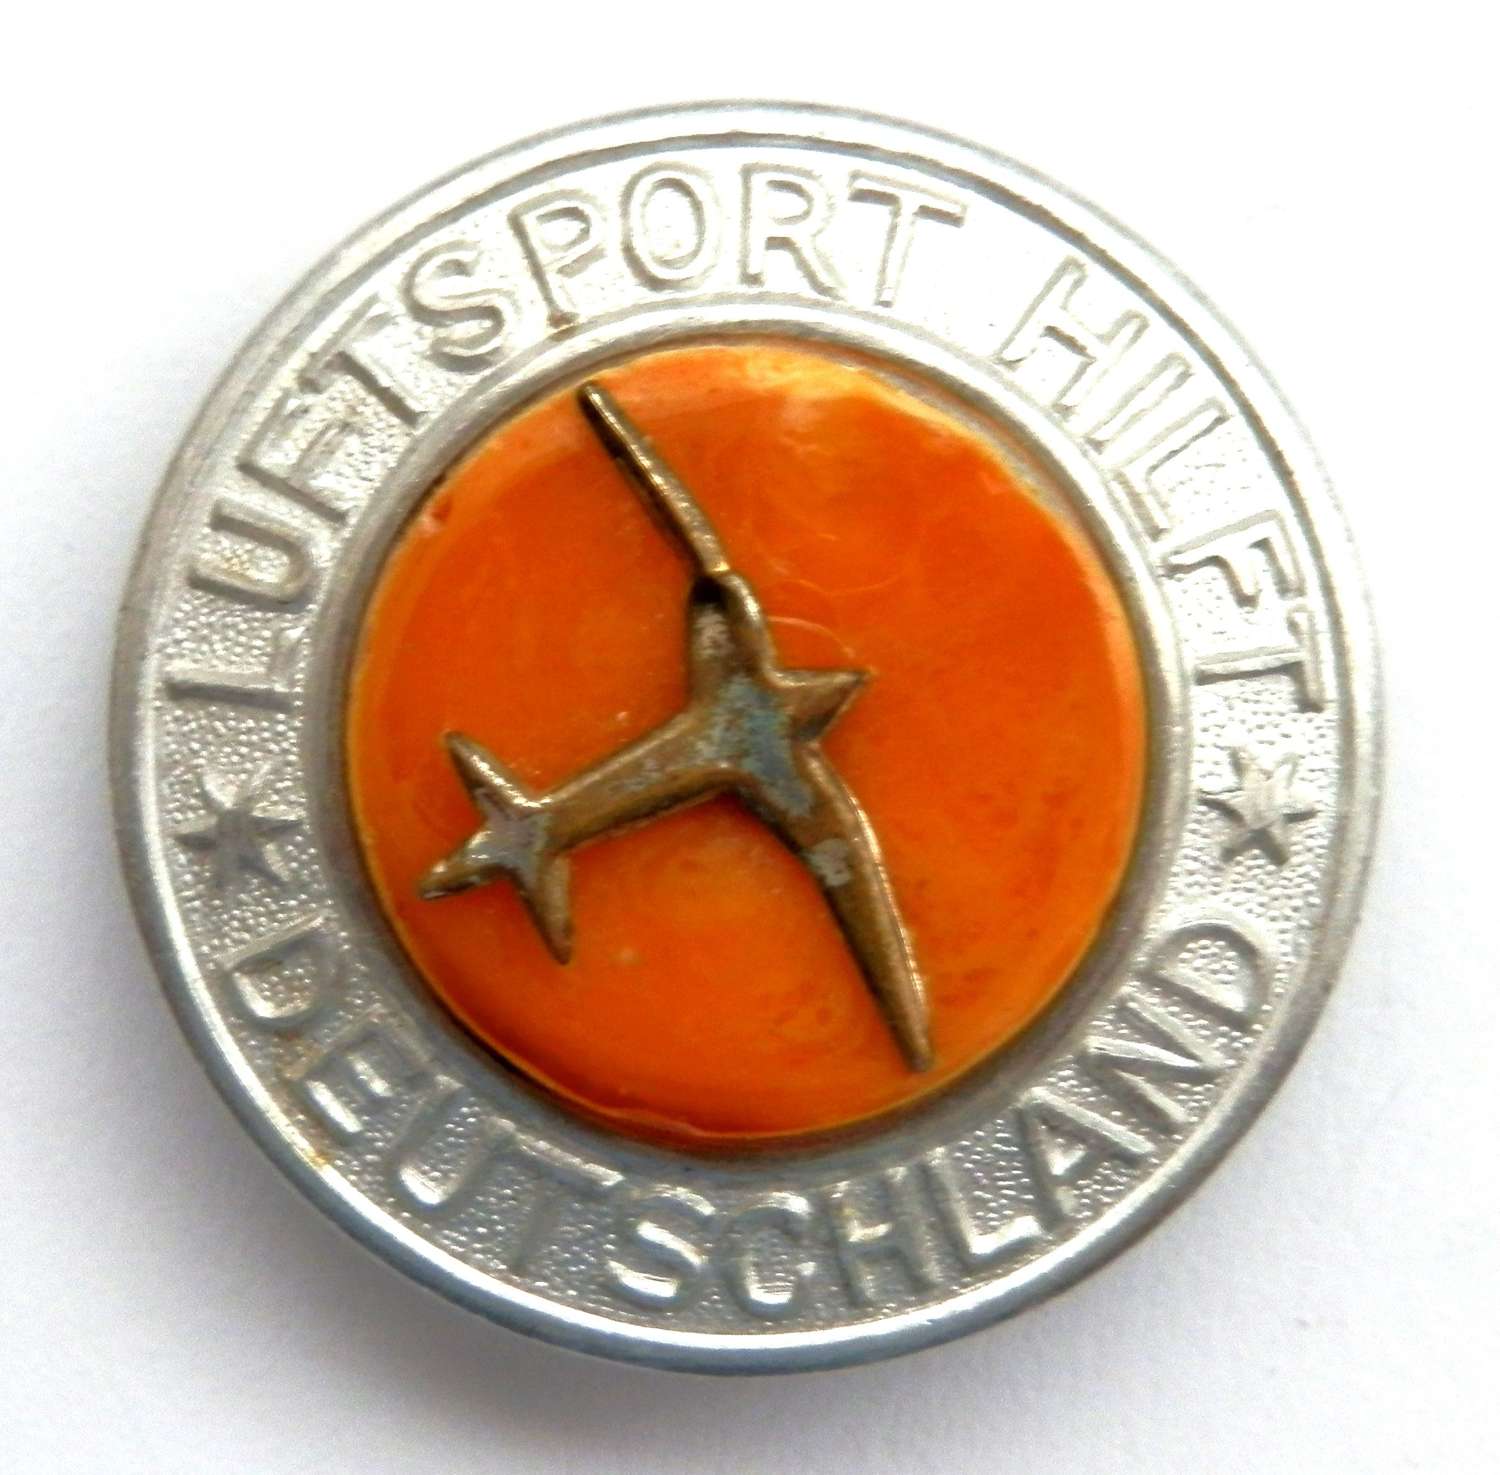 Luftsport Hilft Deutschland Members Badge